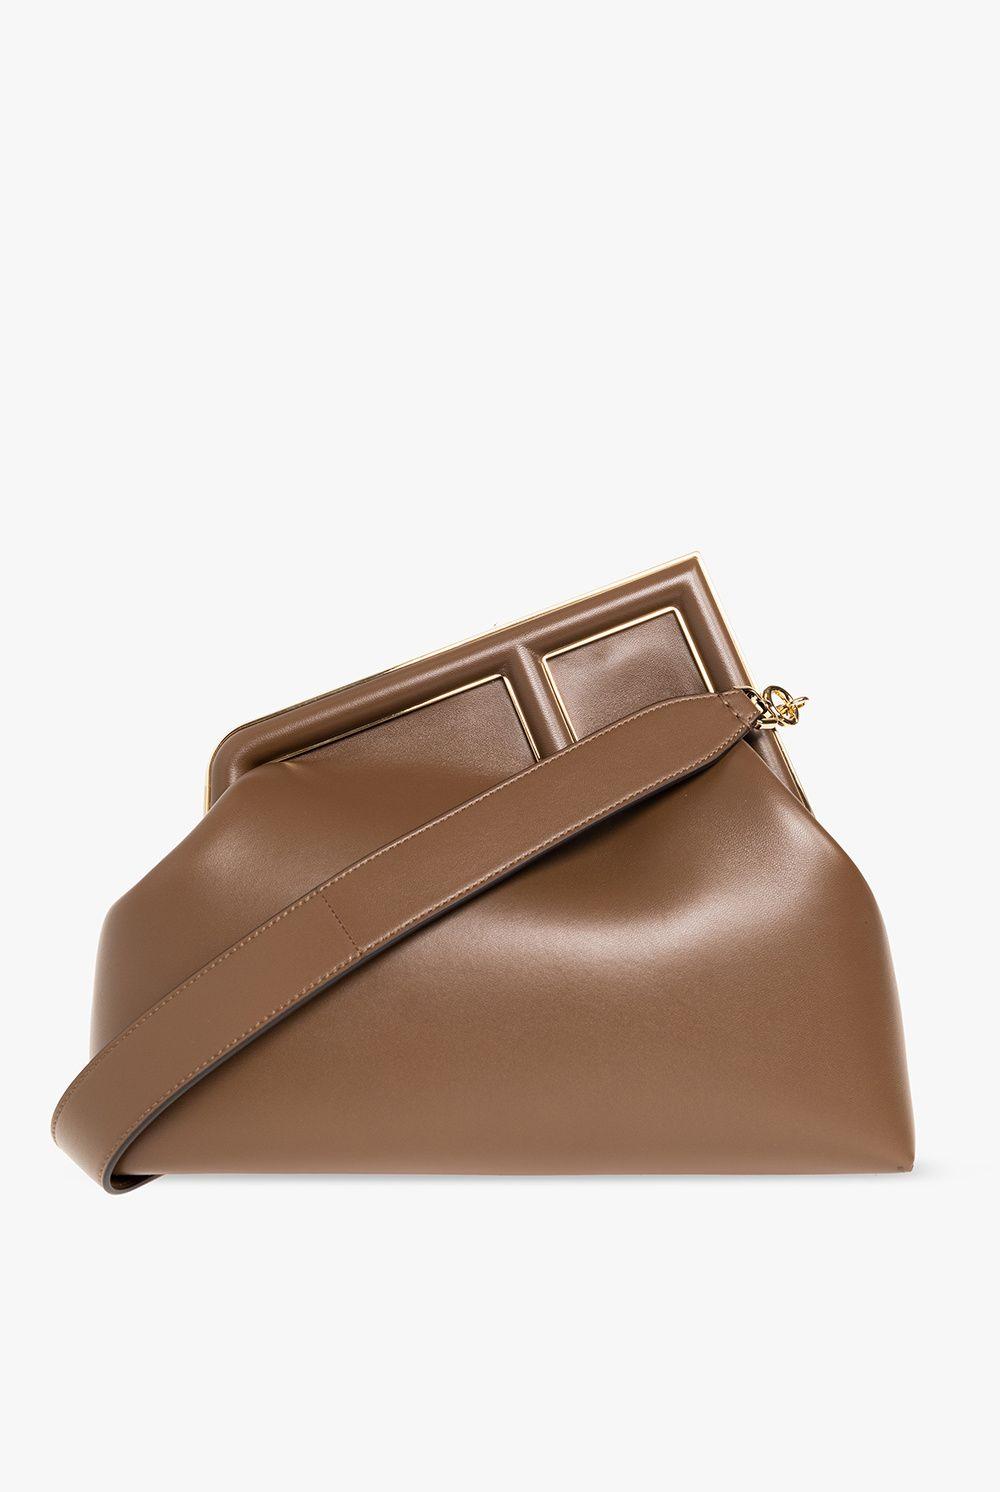 Fendi First Medium Leather Shoulder Bag in Brown